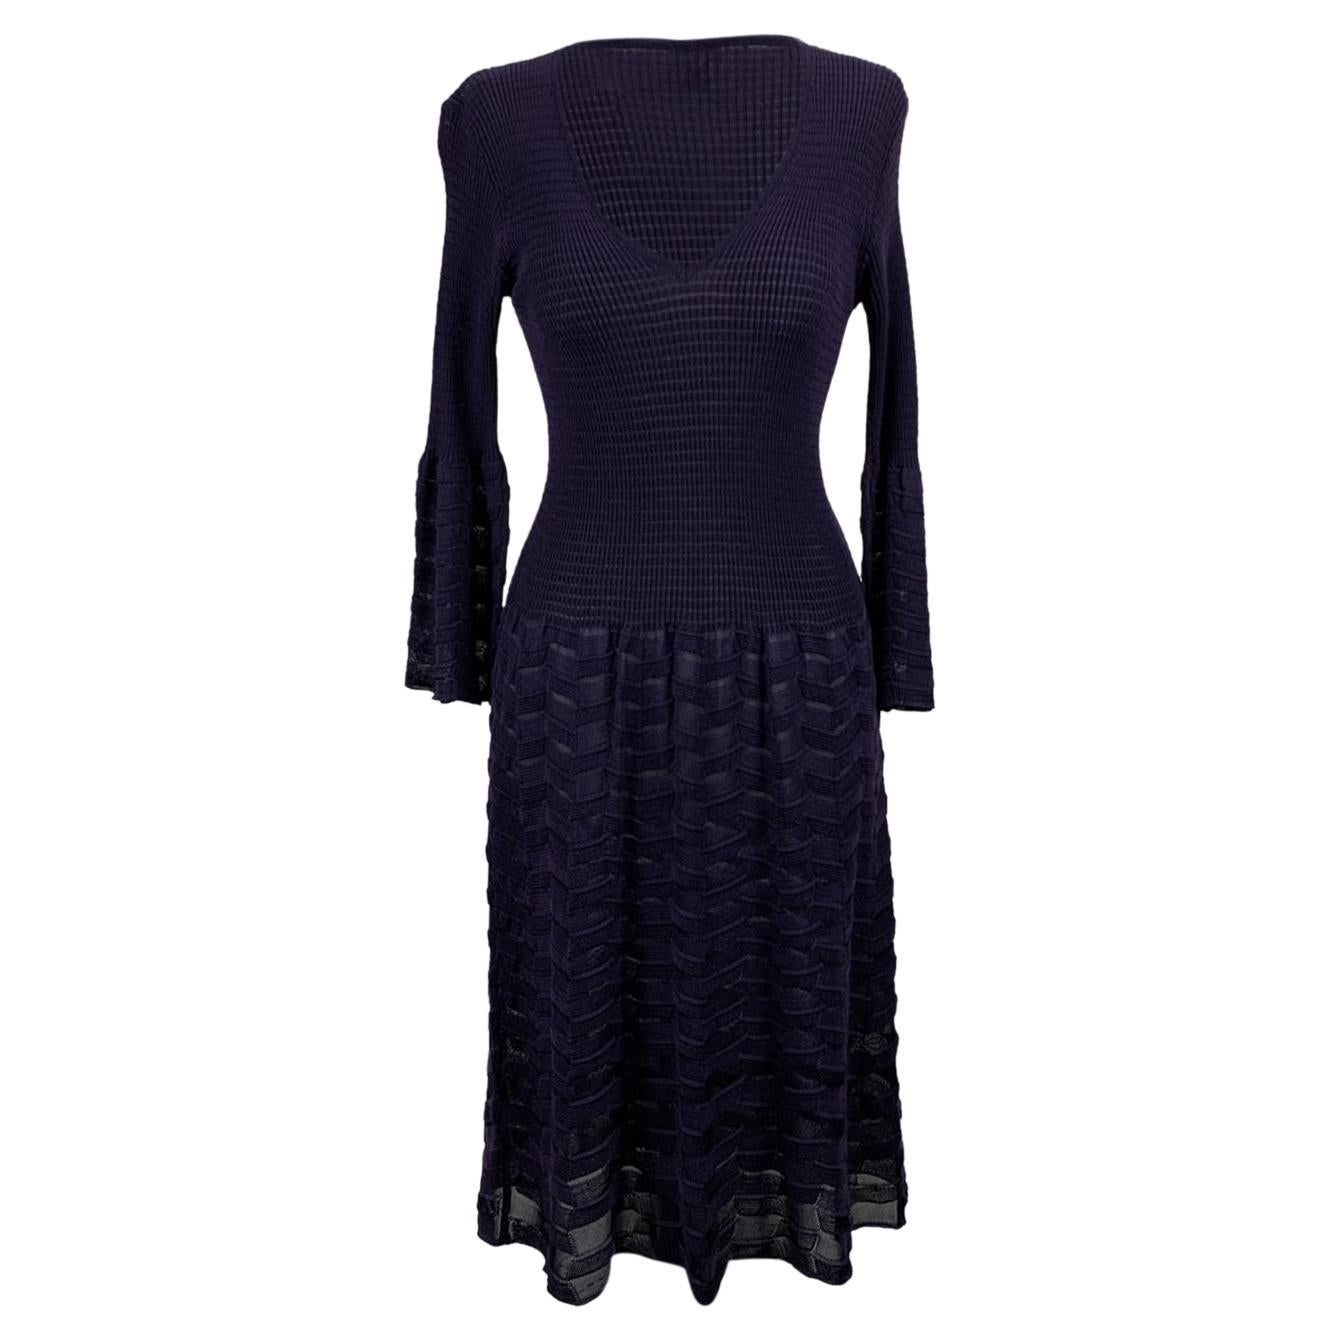 M Missoni Purple Wool Blend Knit Long Sleeve Dress Size 44 IT